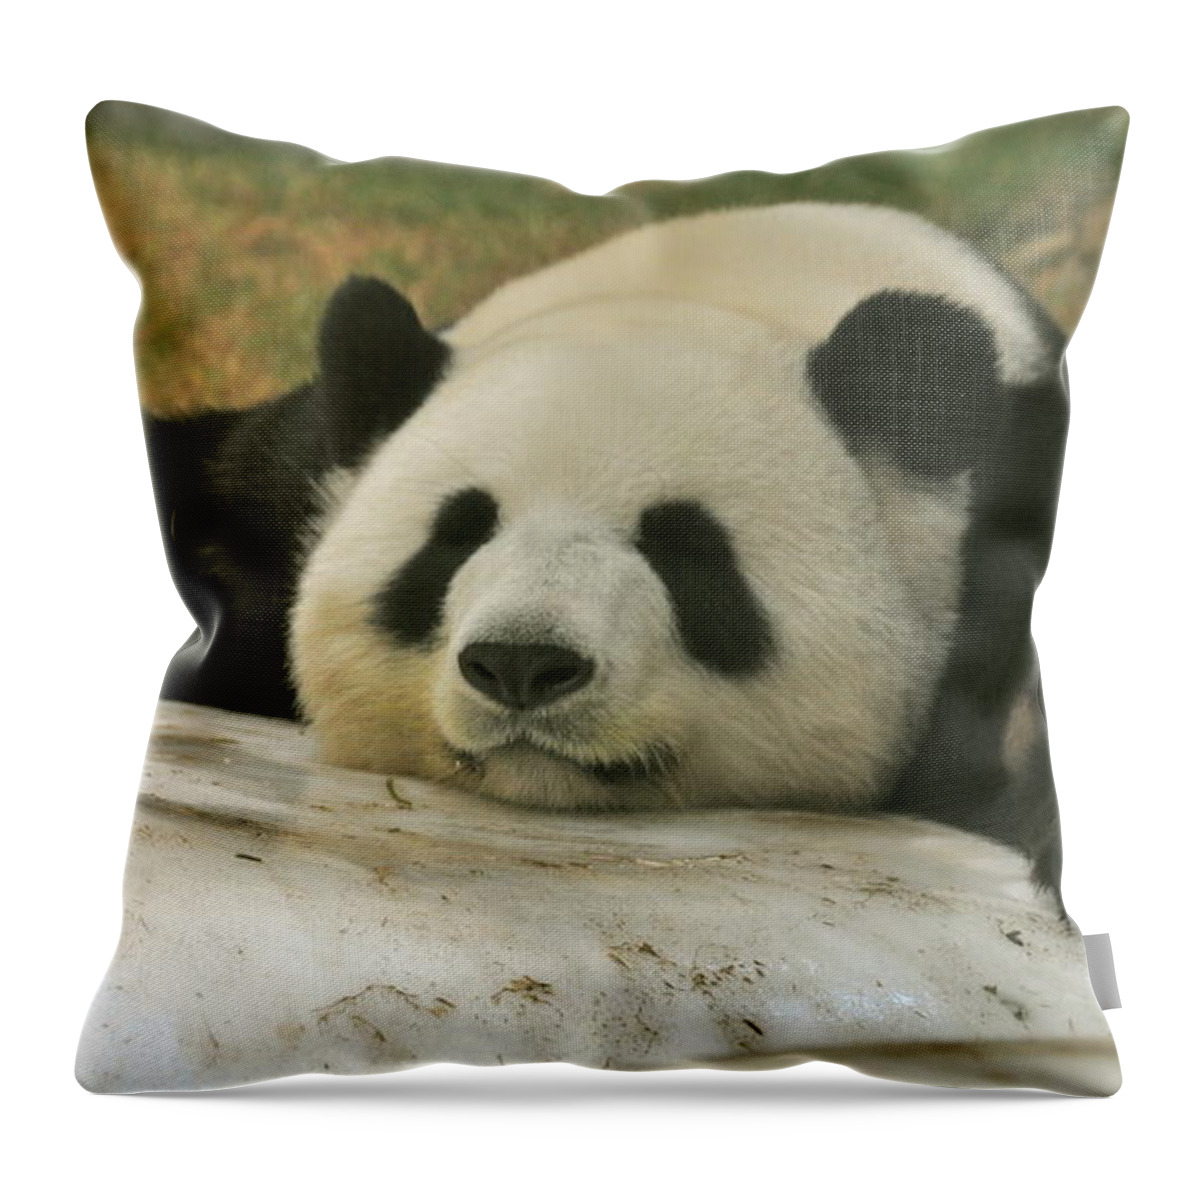 Giant Panda Sleeping Throw Pillow by Caroline Reyes-Loughrey - Pixels